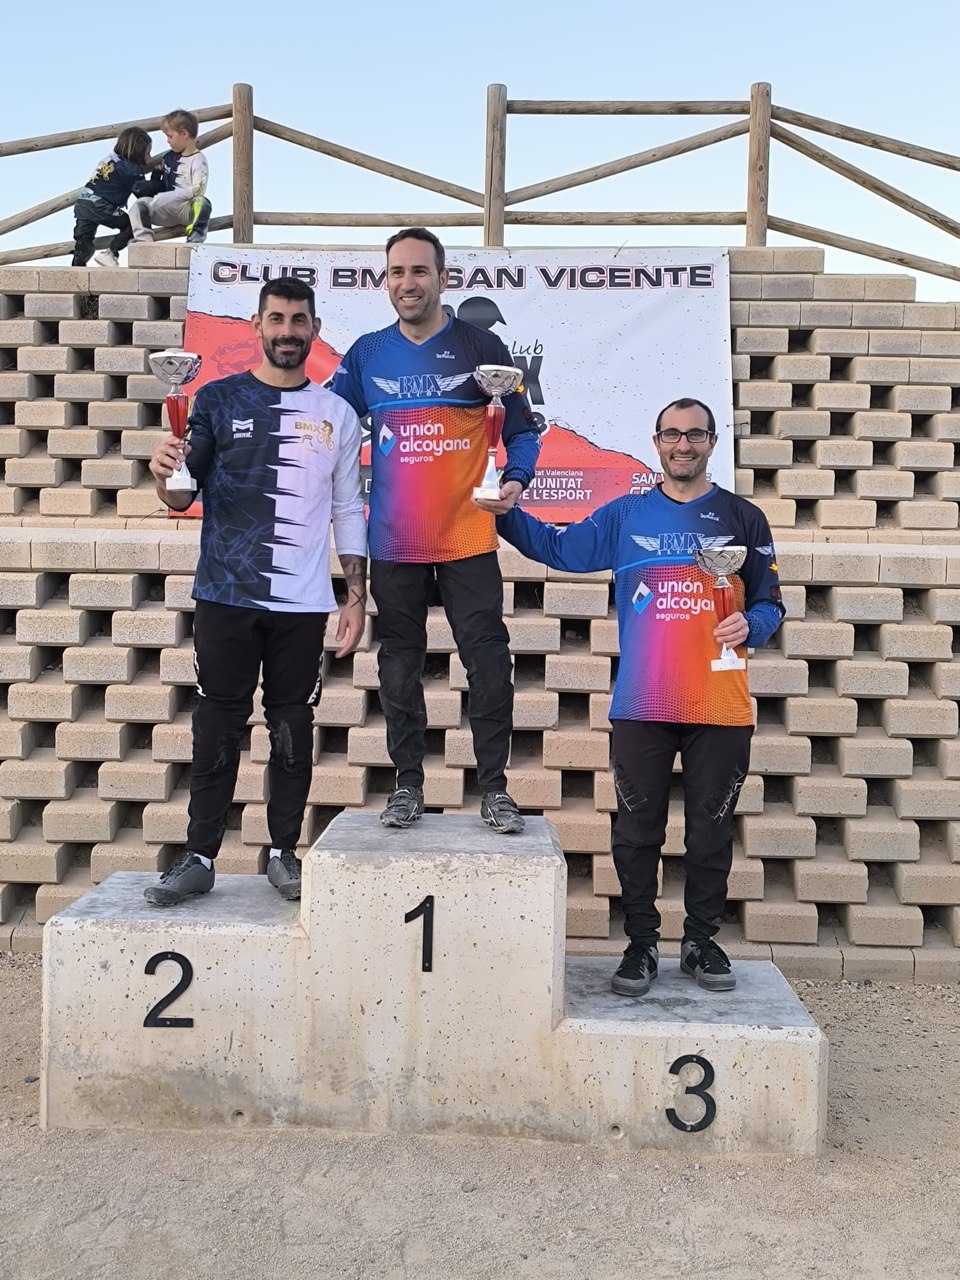 Tercera prueba de la Copa BMX de la Comunitat Valenciana